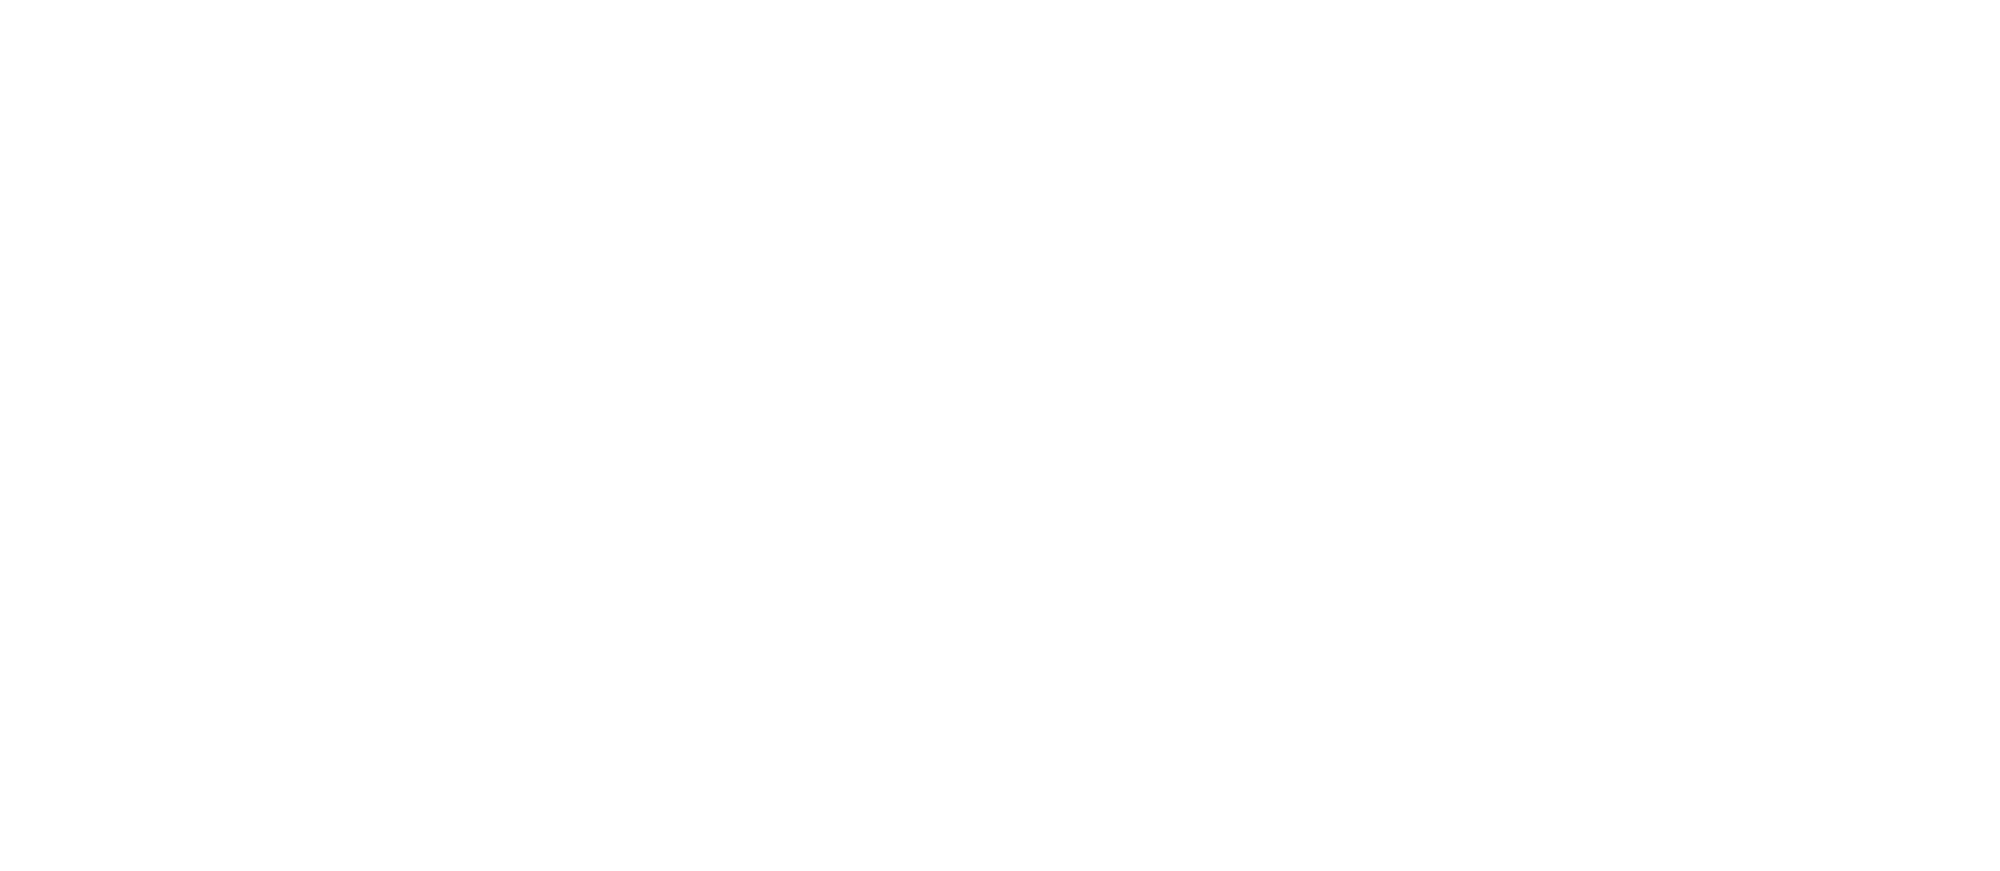 Henseler & Kocian Orthodontics logo